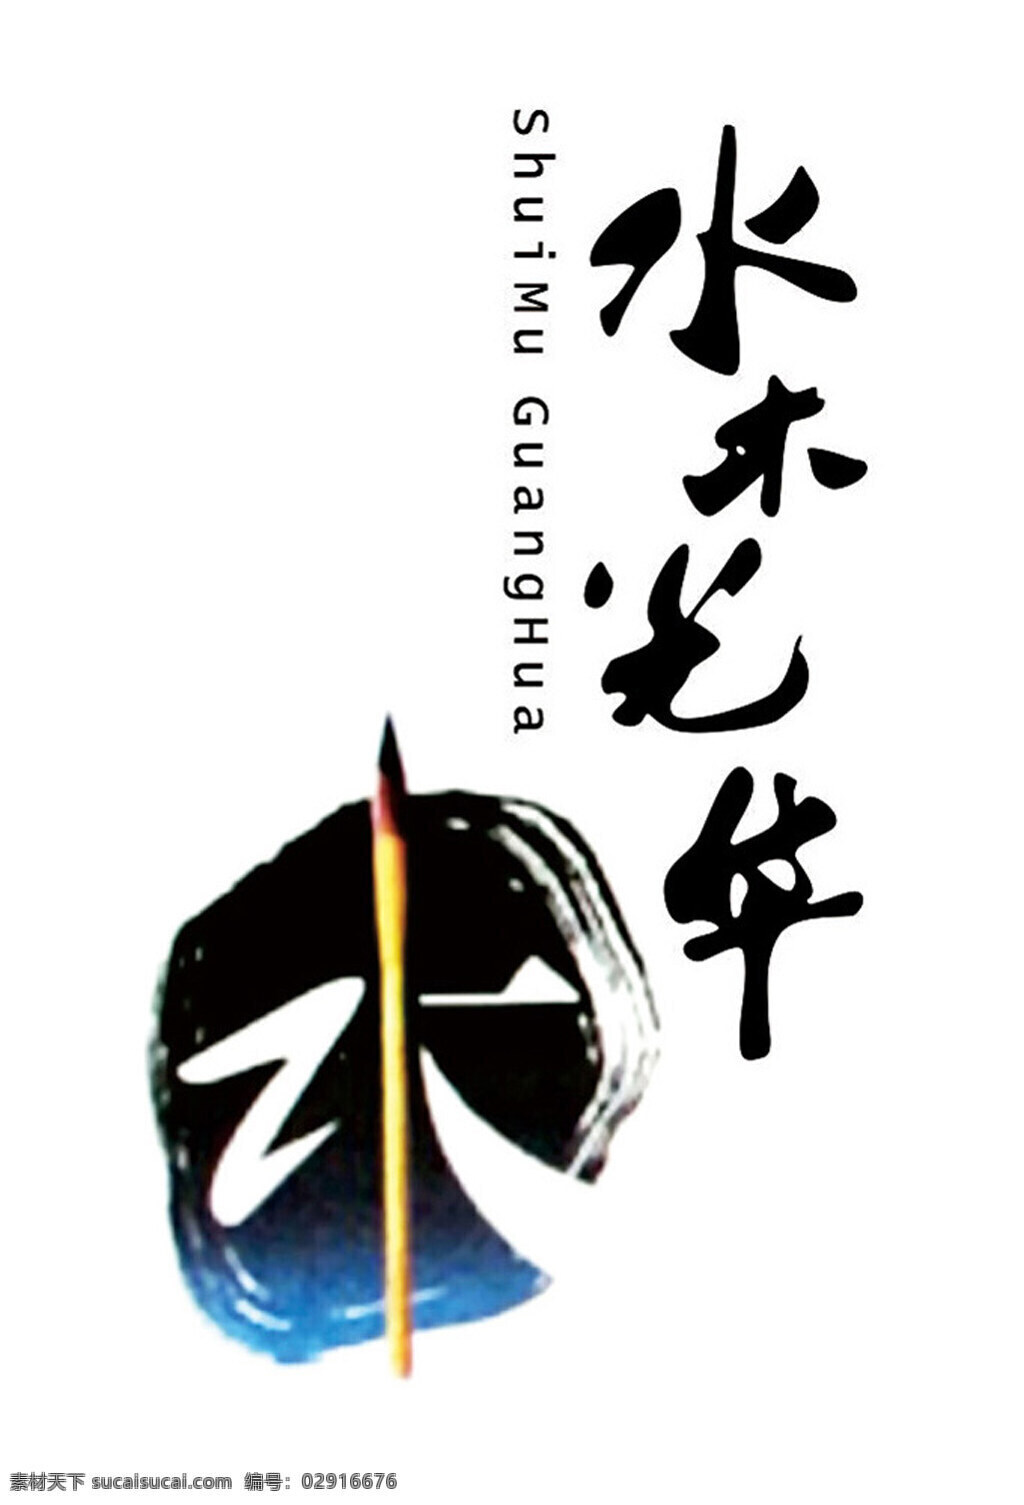 水木年华 logo 公司logo 企业 logo设计 专用 字体 房产 背景 白色